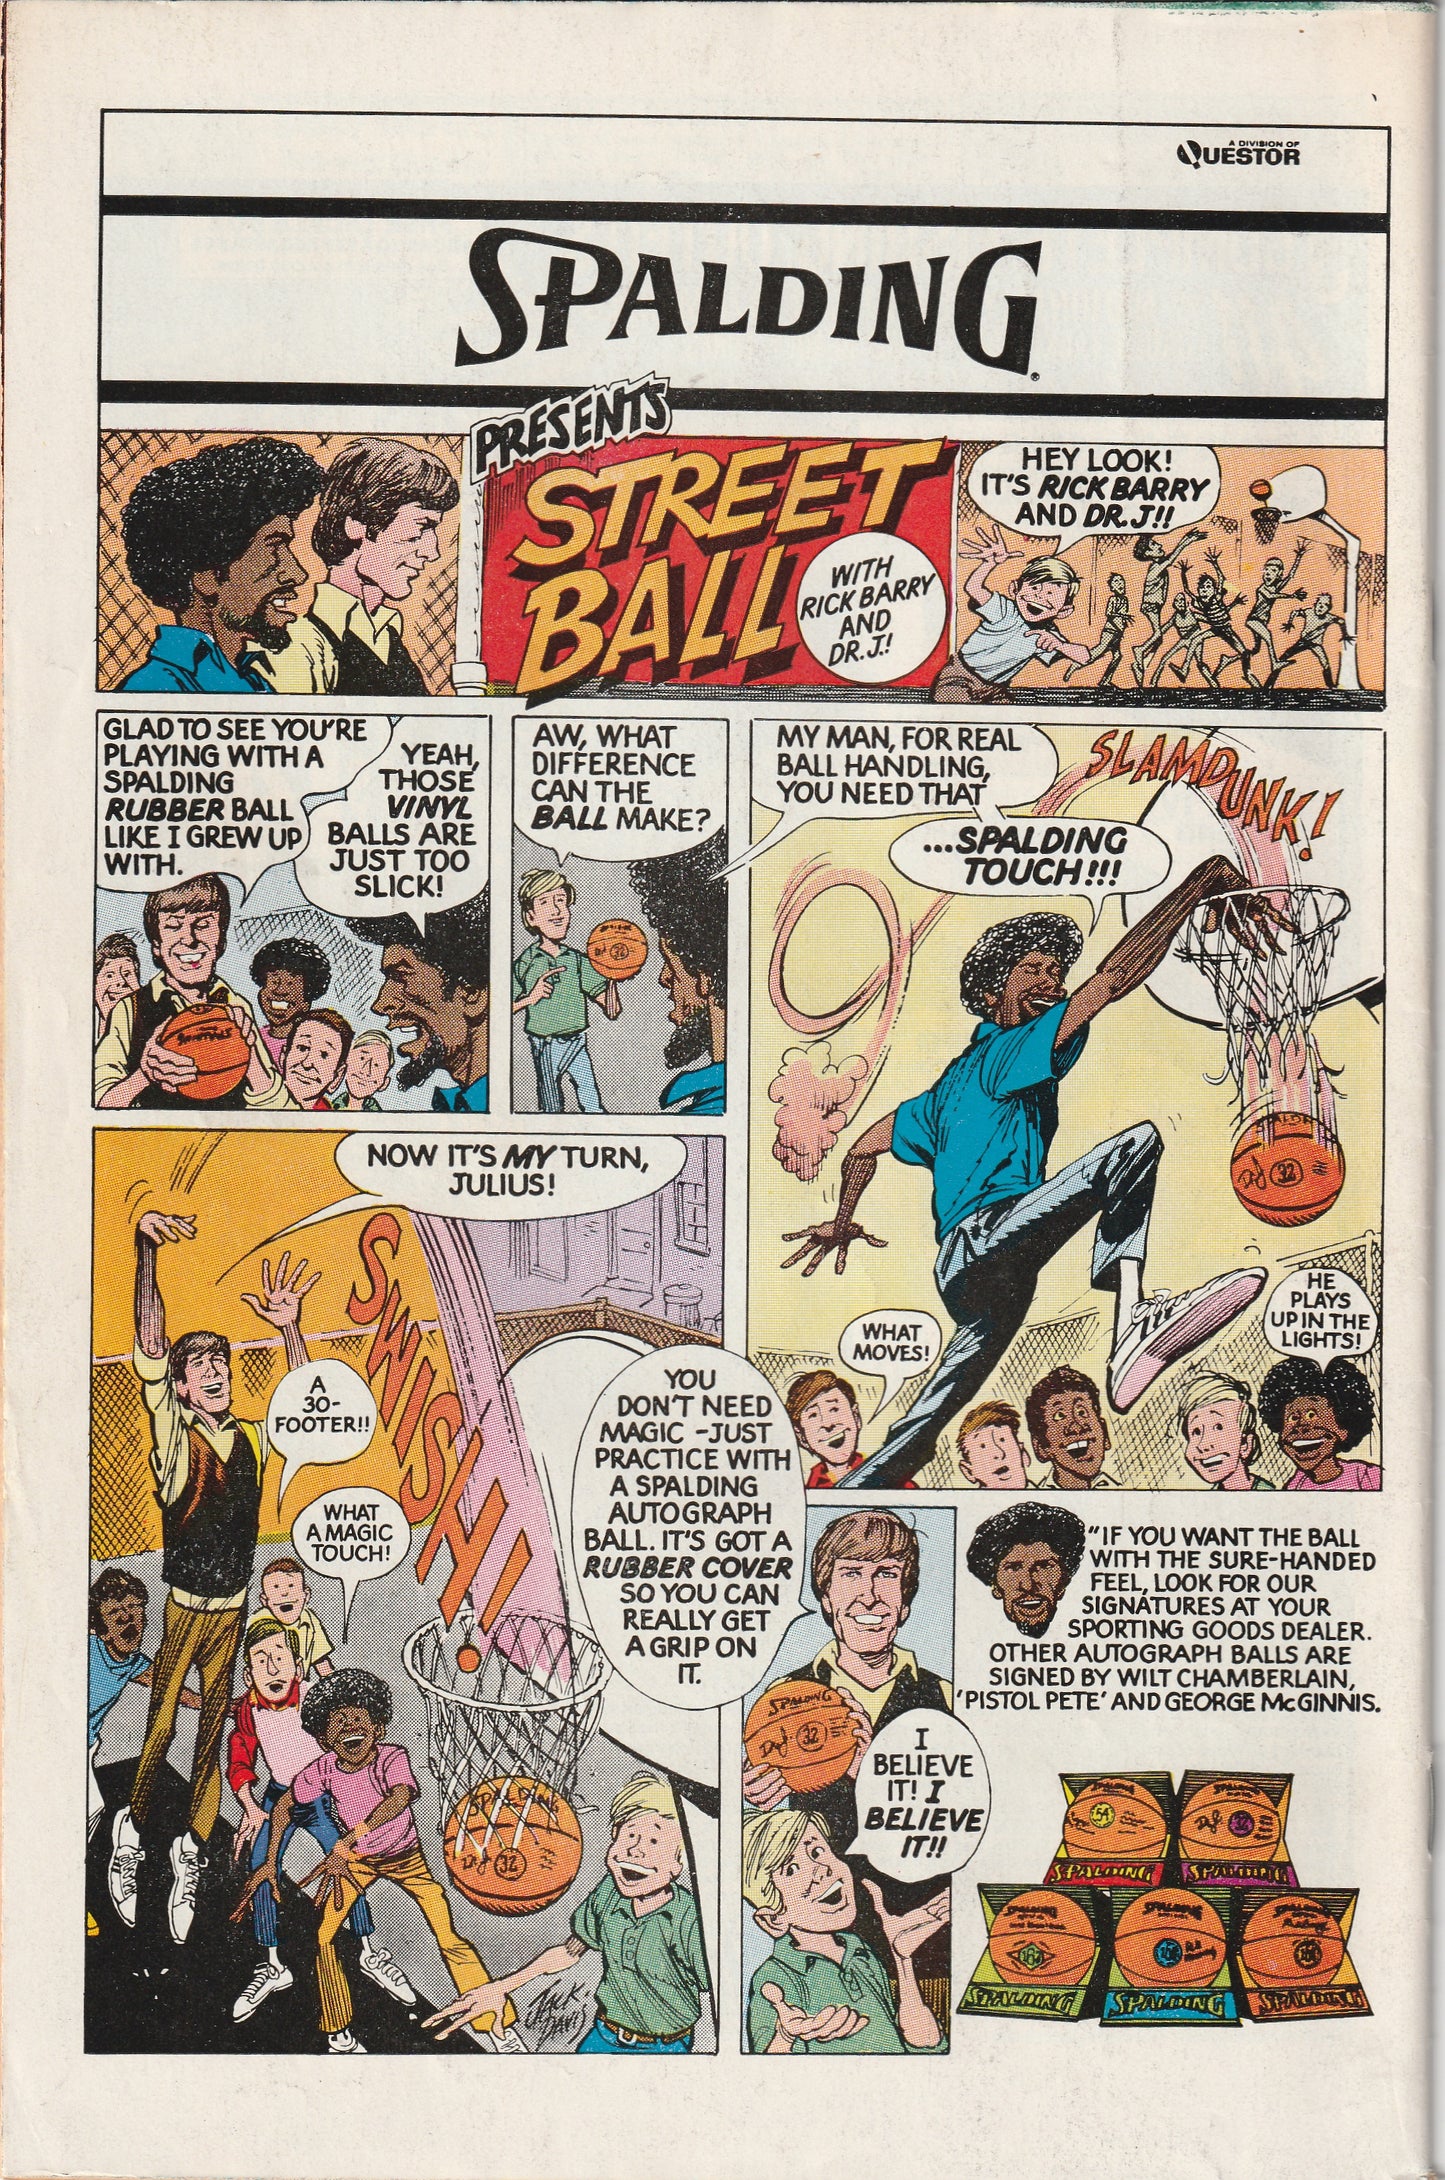 Avengers #174 (1978) - Collector (Tanaleer Tivan) Appearance. Korvac Saga